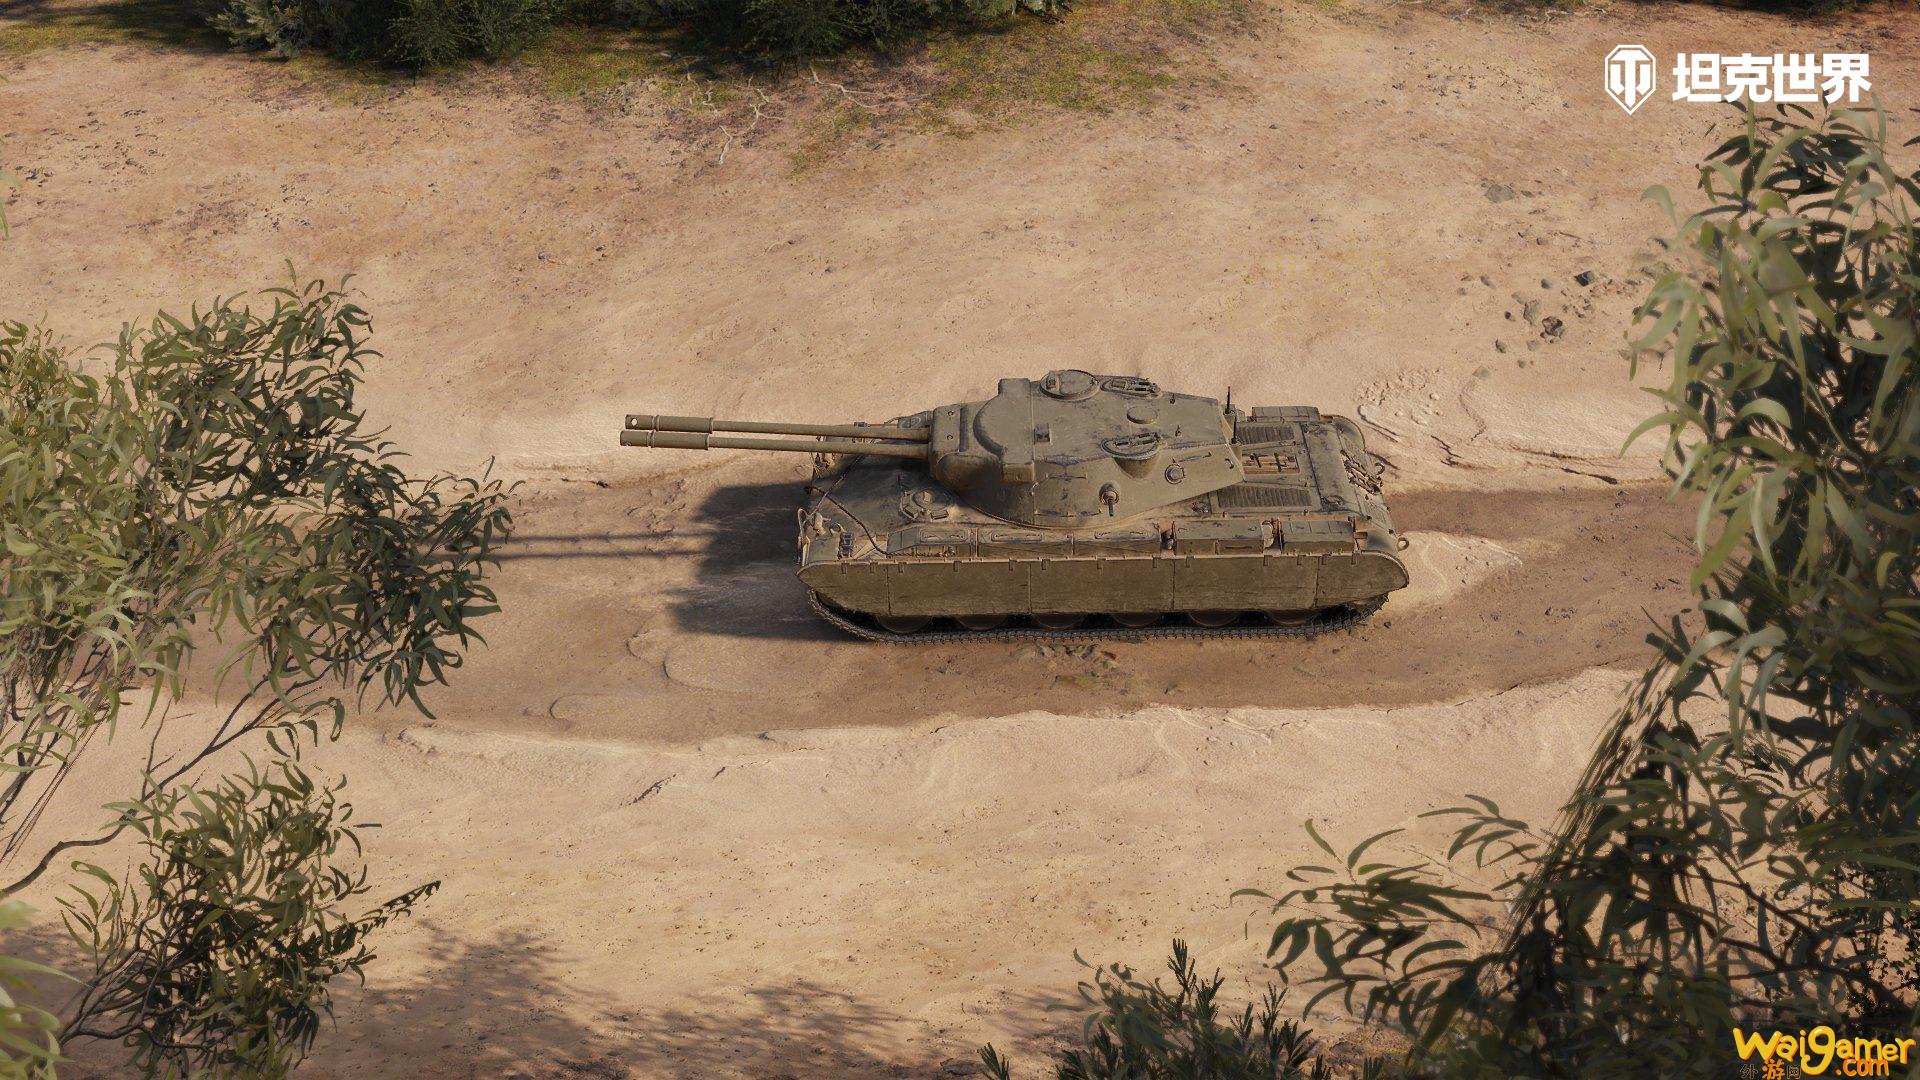 《坦克世界》全新1.20.1版本上线 R系自行反坦克炮加入游戏